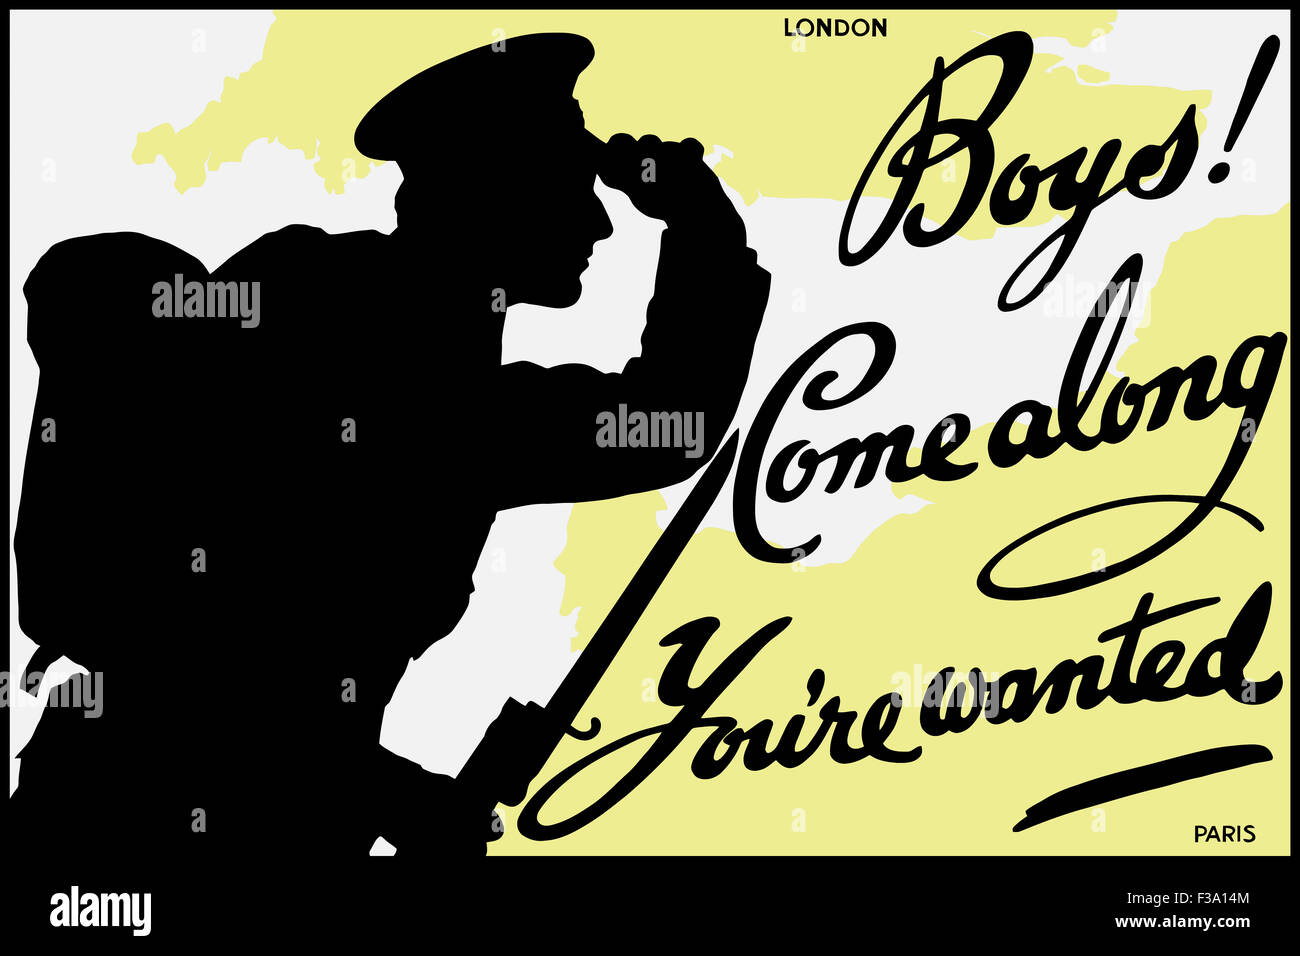 English World War One Poster mit der Silhouette eines Soldaten und eine Karte mit London und Paris. Es liest: Jungs! Alon kommen Stockfoto